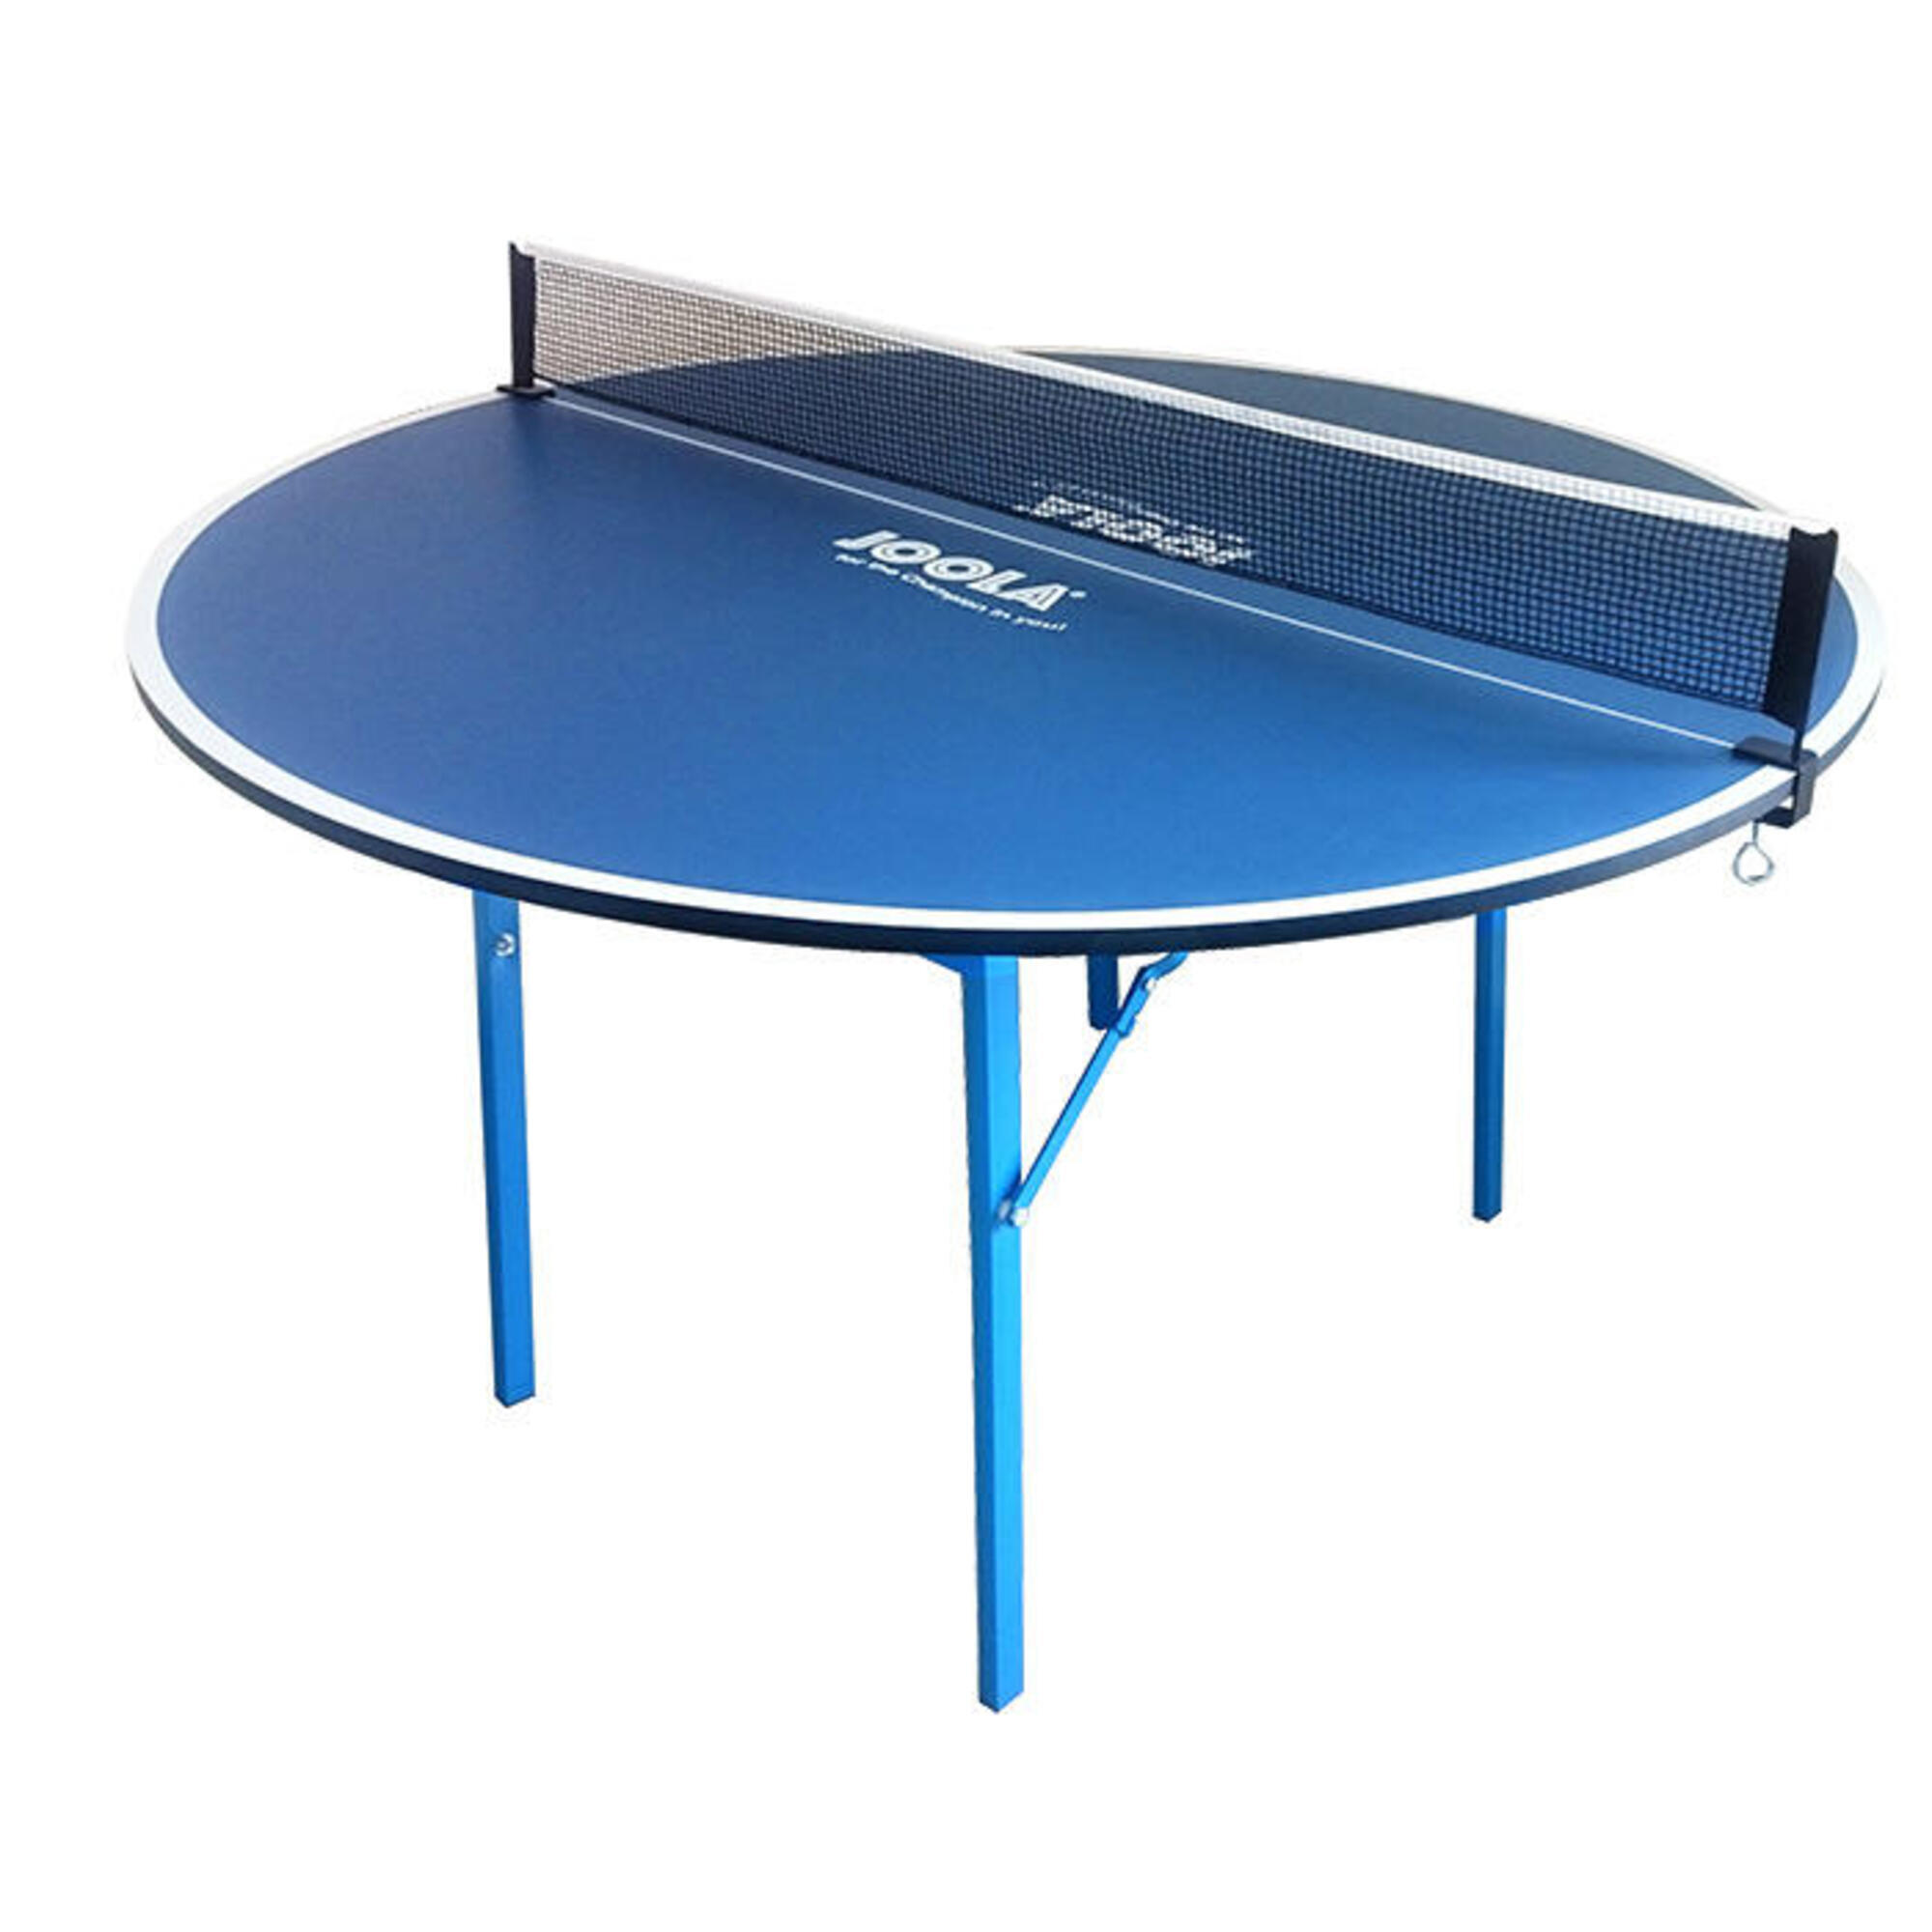 размеры теннисного стола для пинпонга